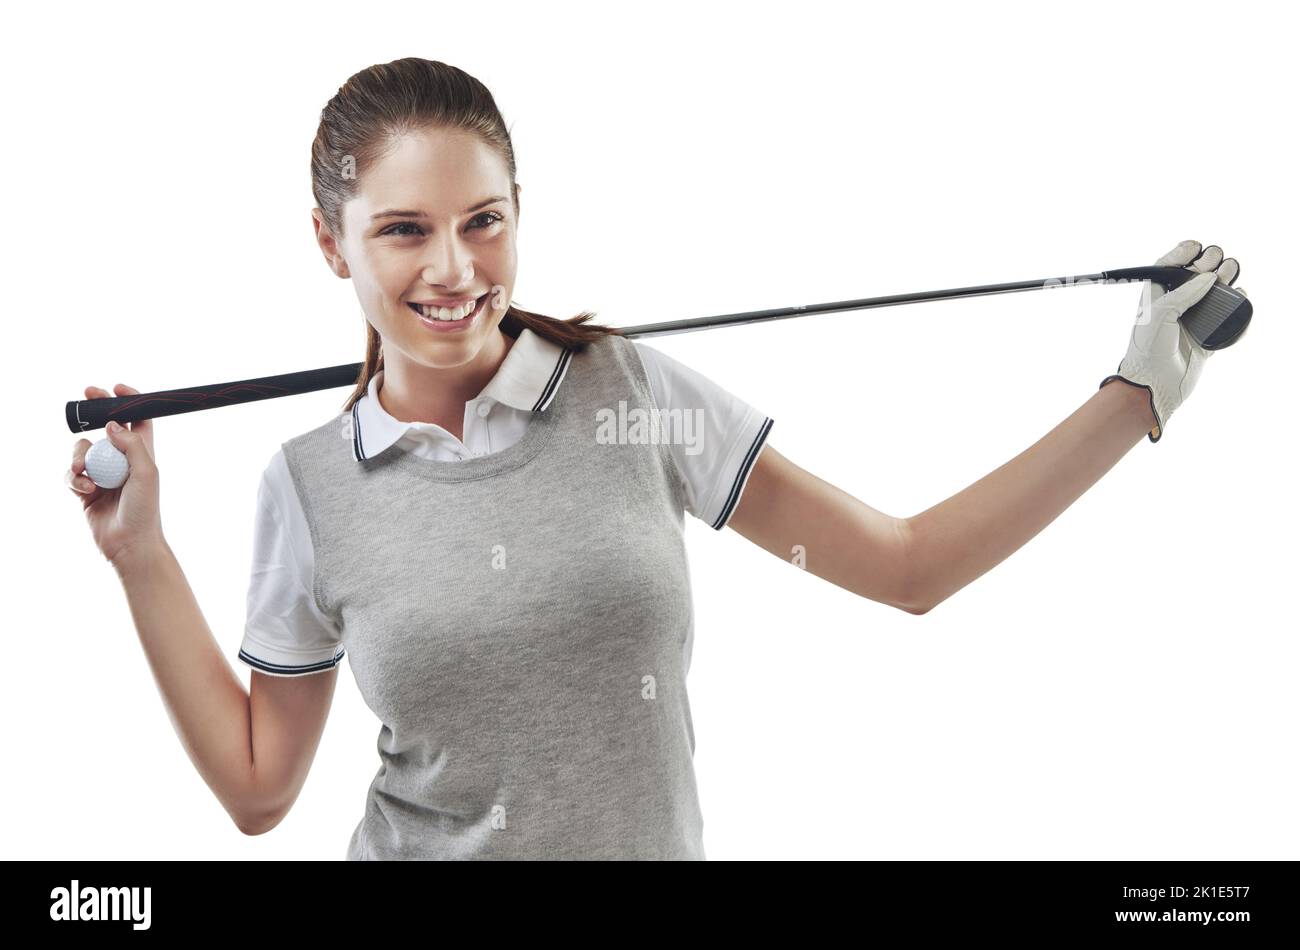 Gewinnen ist nur gleichzusetzen mit dem Platz. Studioaufnahme einer jungen Golferin, die einen Golfschläger hinter ihrem Rücken in Weiß gehalten hat. Stockfoto